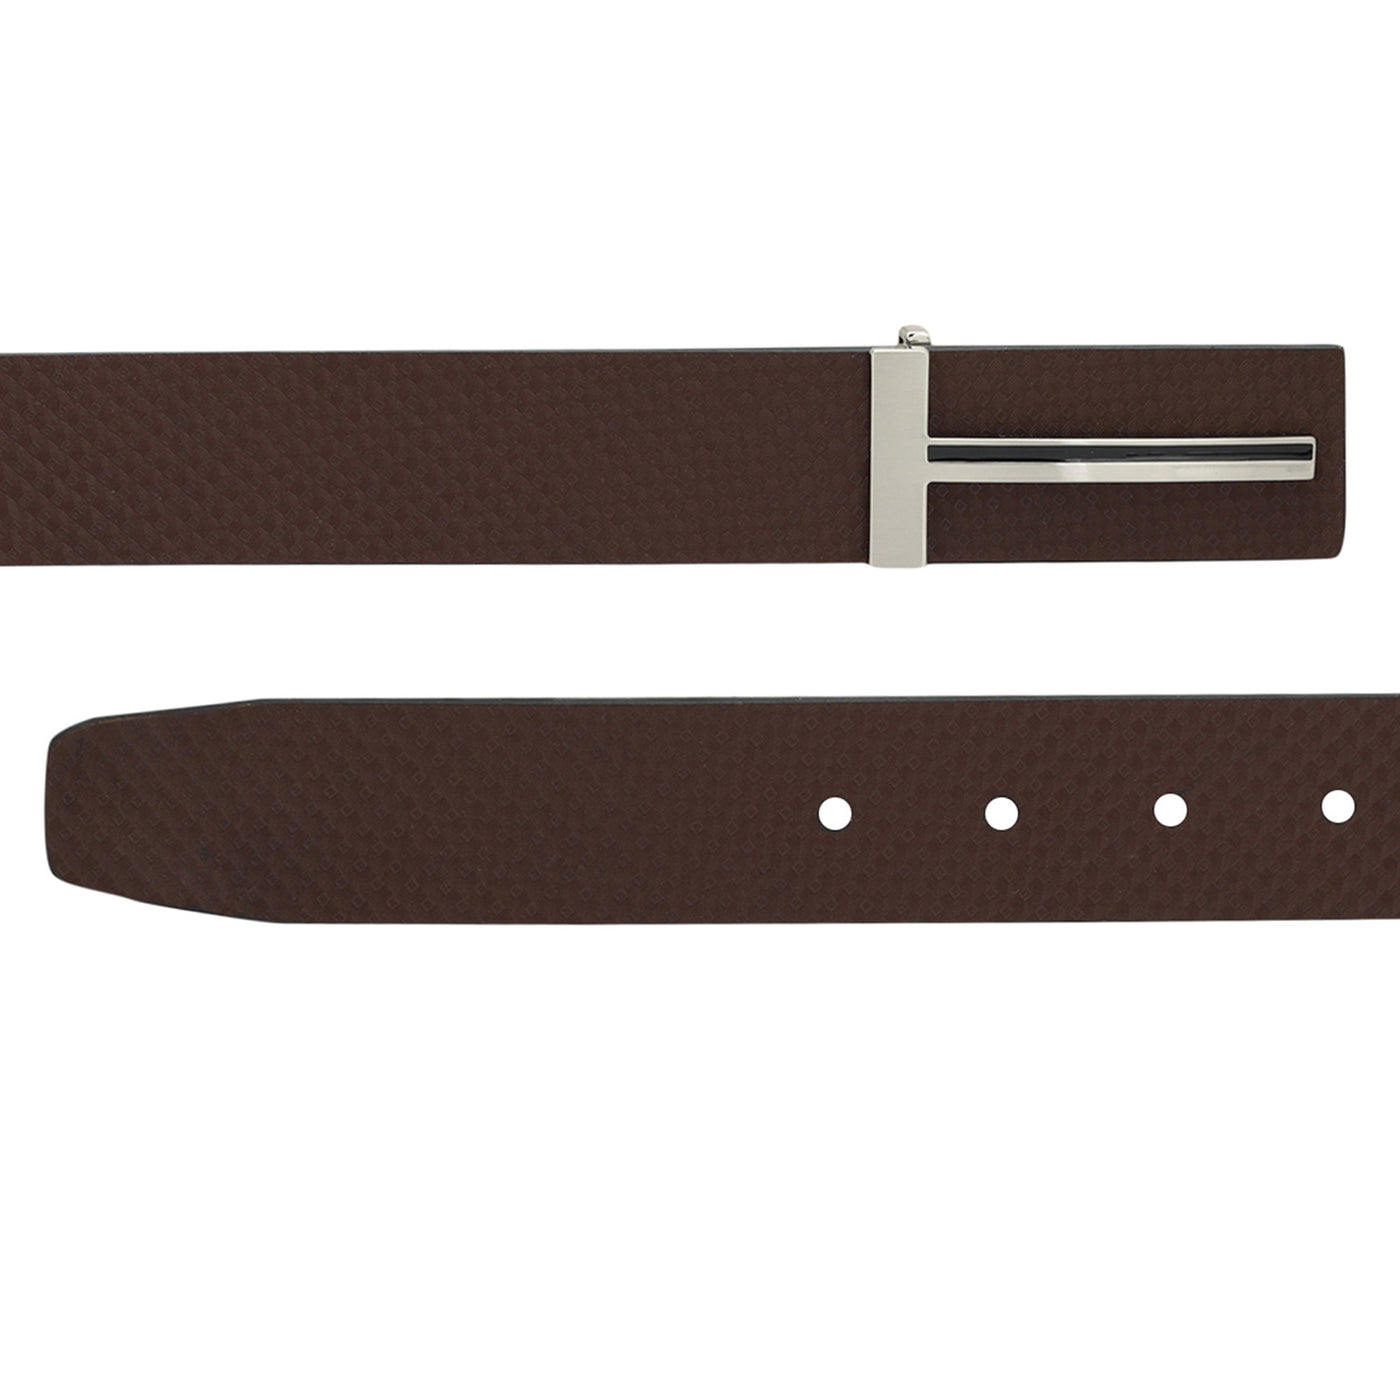 Formal ITP Leather Mens Belt - Brown